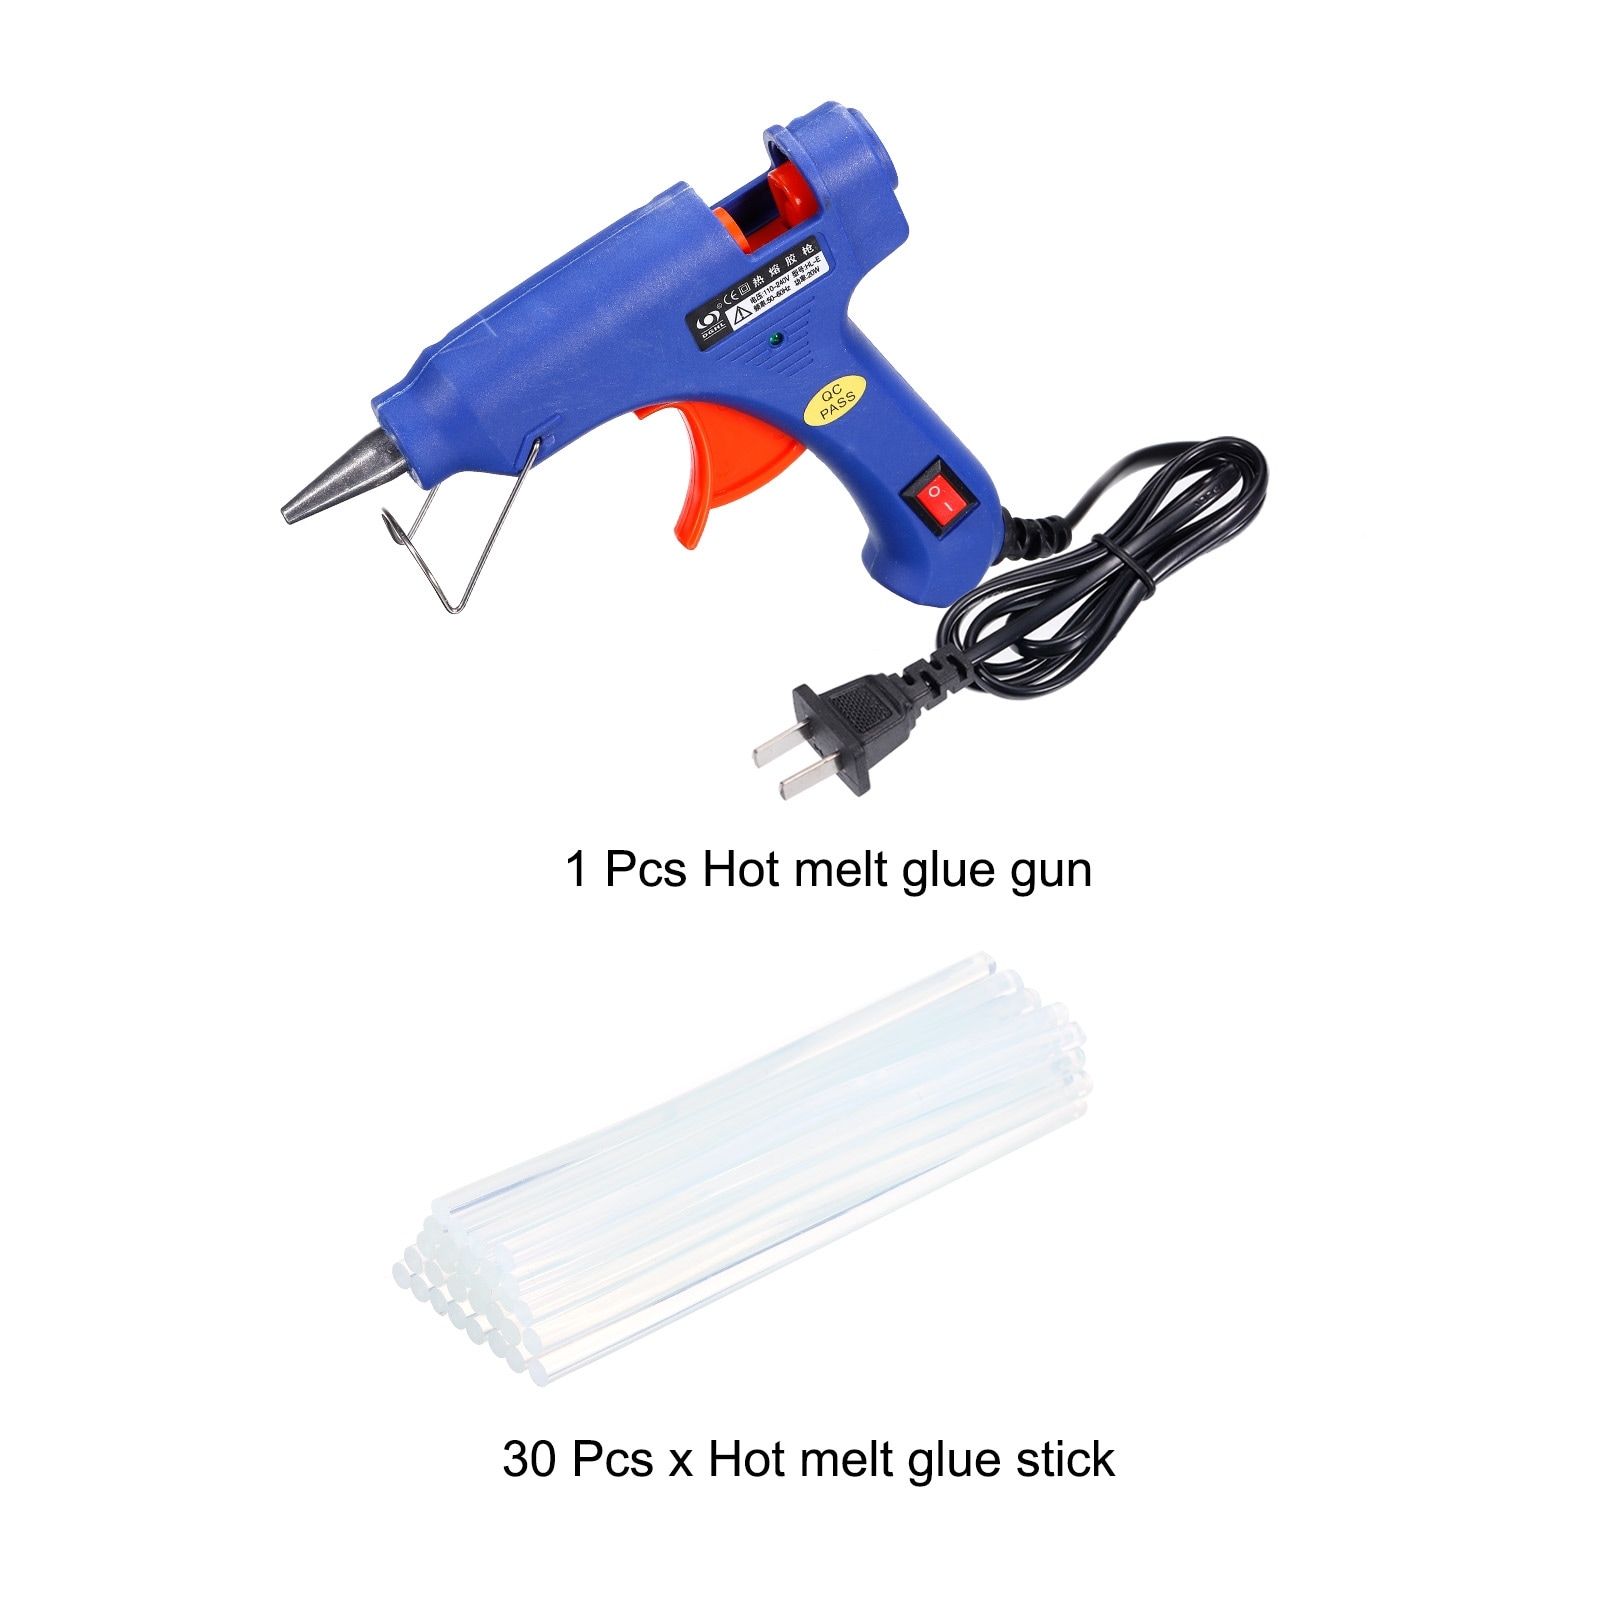 Mini Hot Glue Gun Kit W 30pcs Clear Hot Melt Glue Sticks 0.28x8 20W - Blue